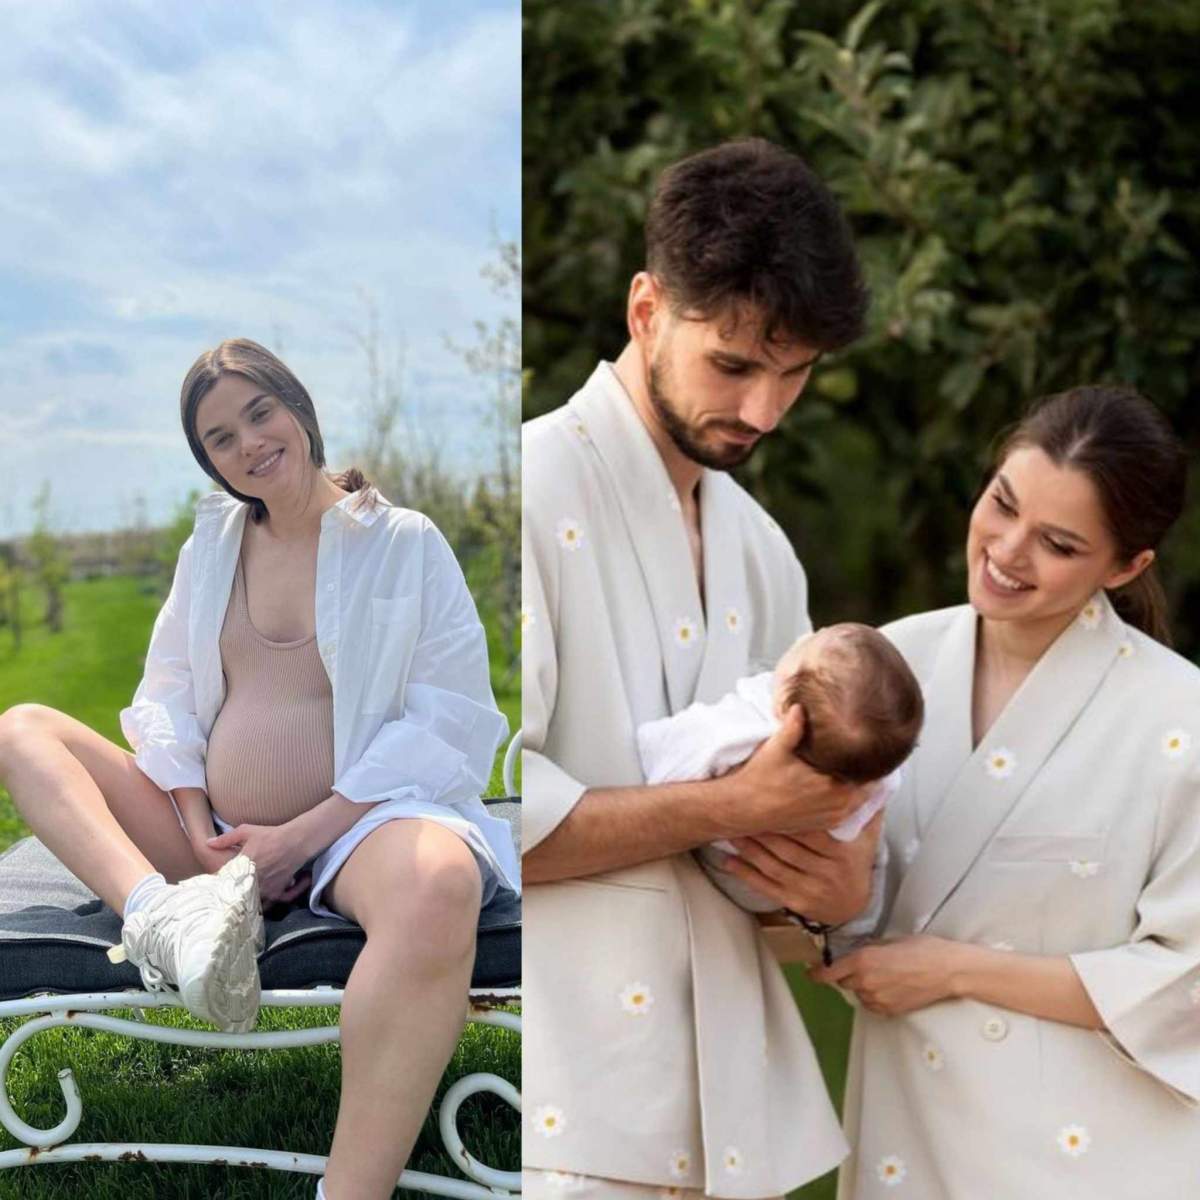 Colaj foto cu Theo Rose însărcinată și artista împreună cu familia ei